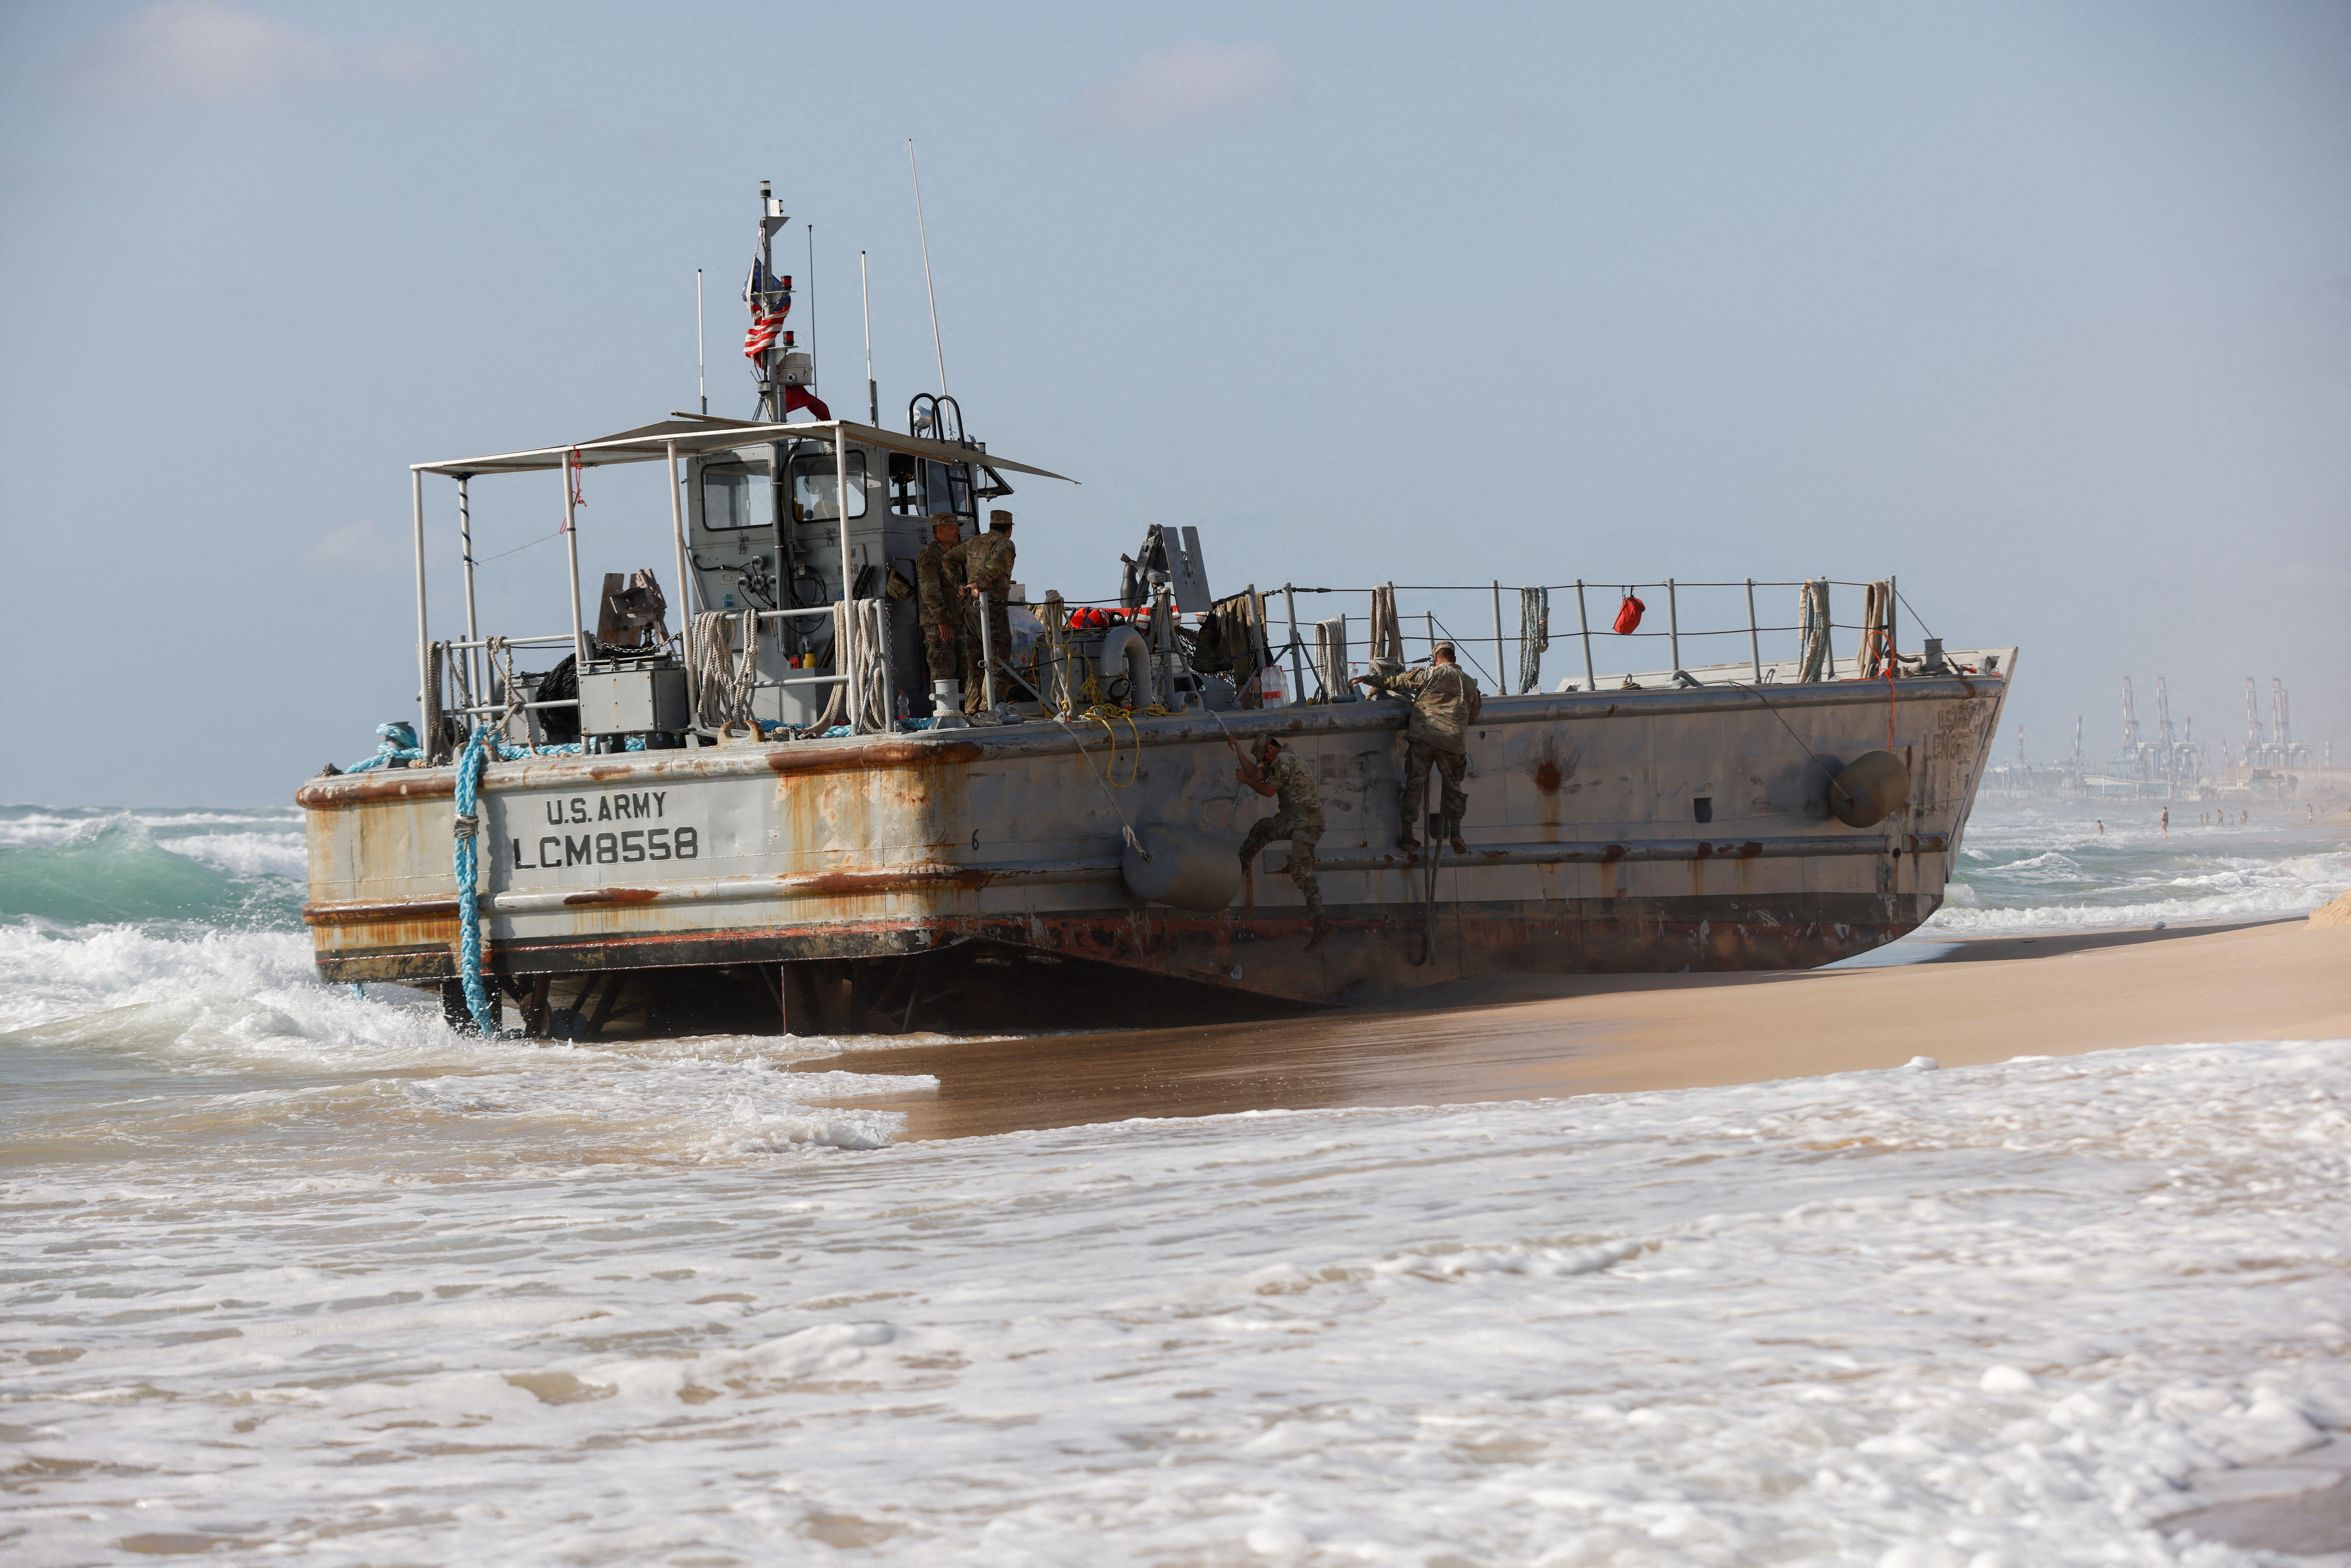 Cyprus-Gaza aid jetty repairs ongoing